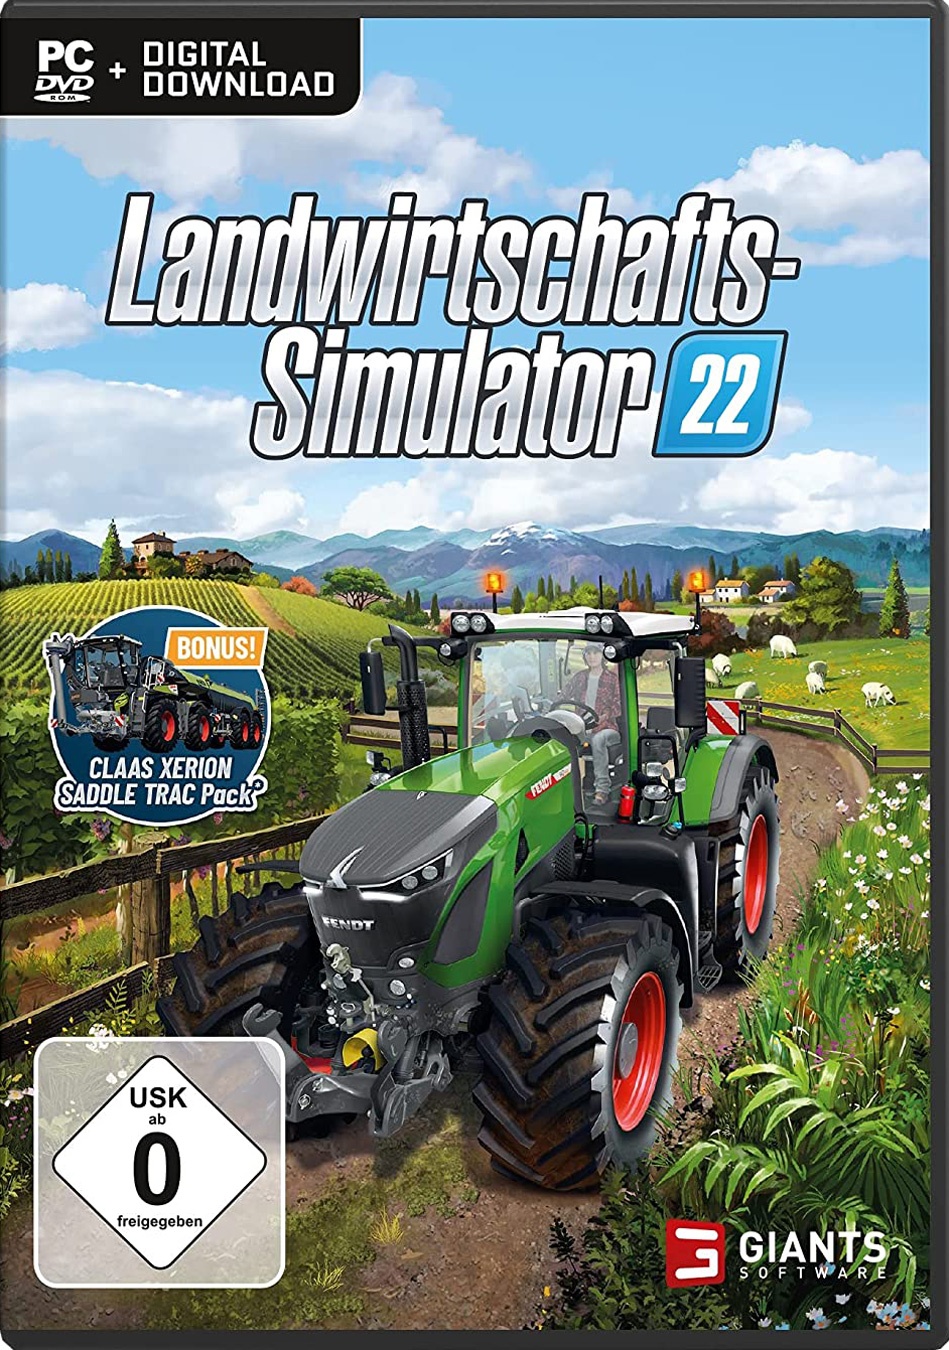 Landwirtschafts-Simulator 22 - Alle Artikel zum Spiel